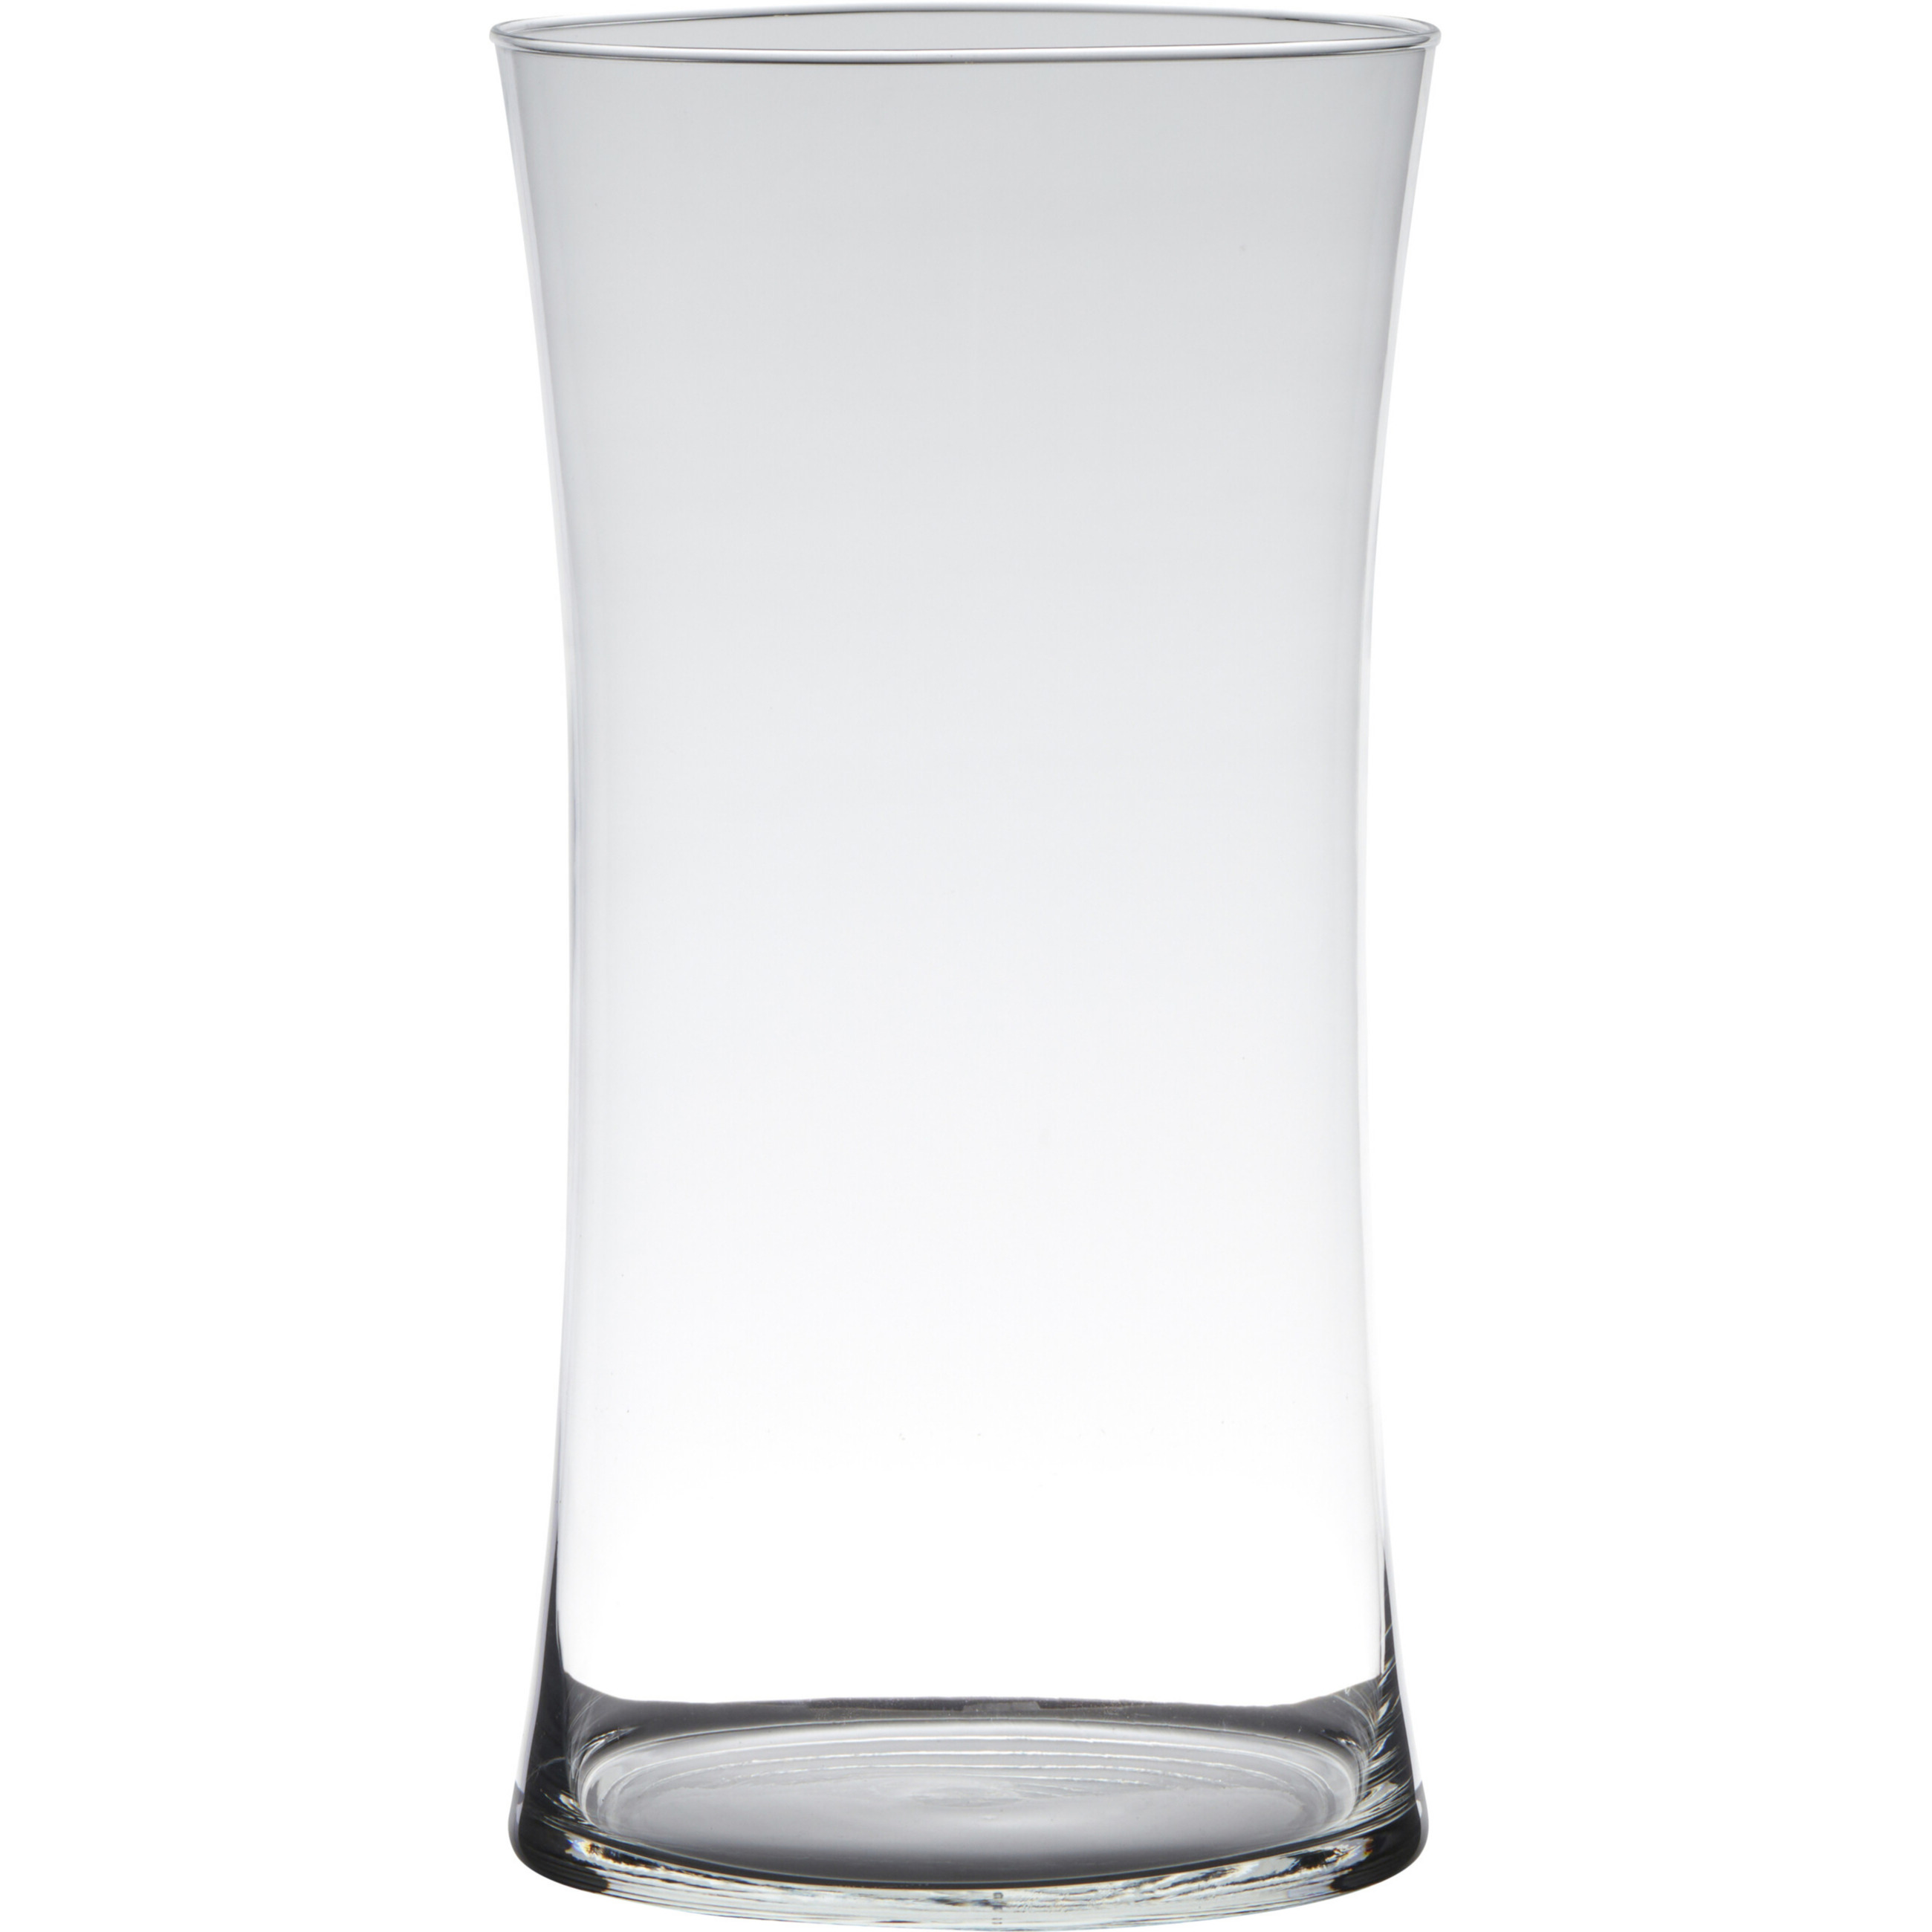 Hakbijl Glass Transparante luxe stijlvolle vaas/vazen van glas 30 x 15 cm -